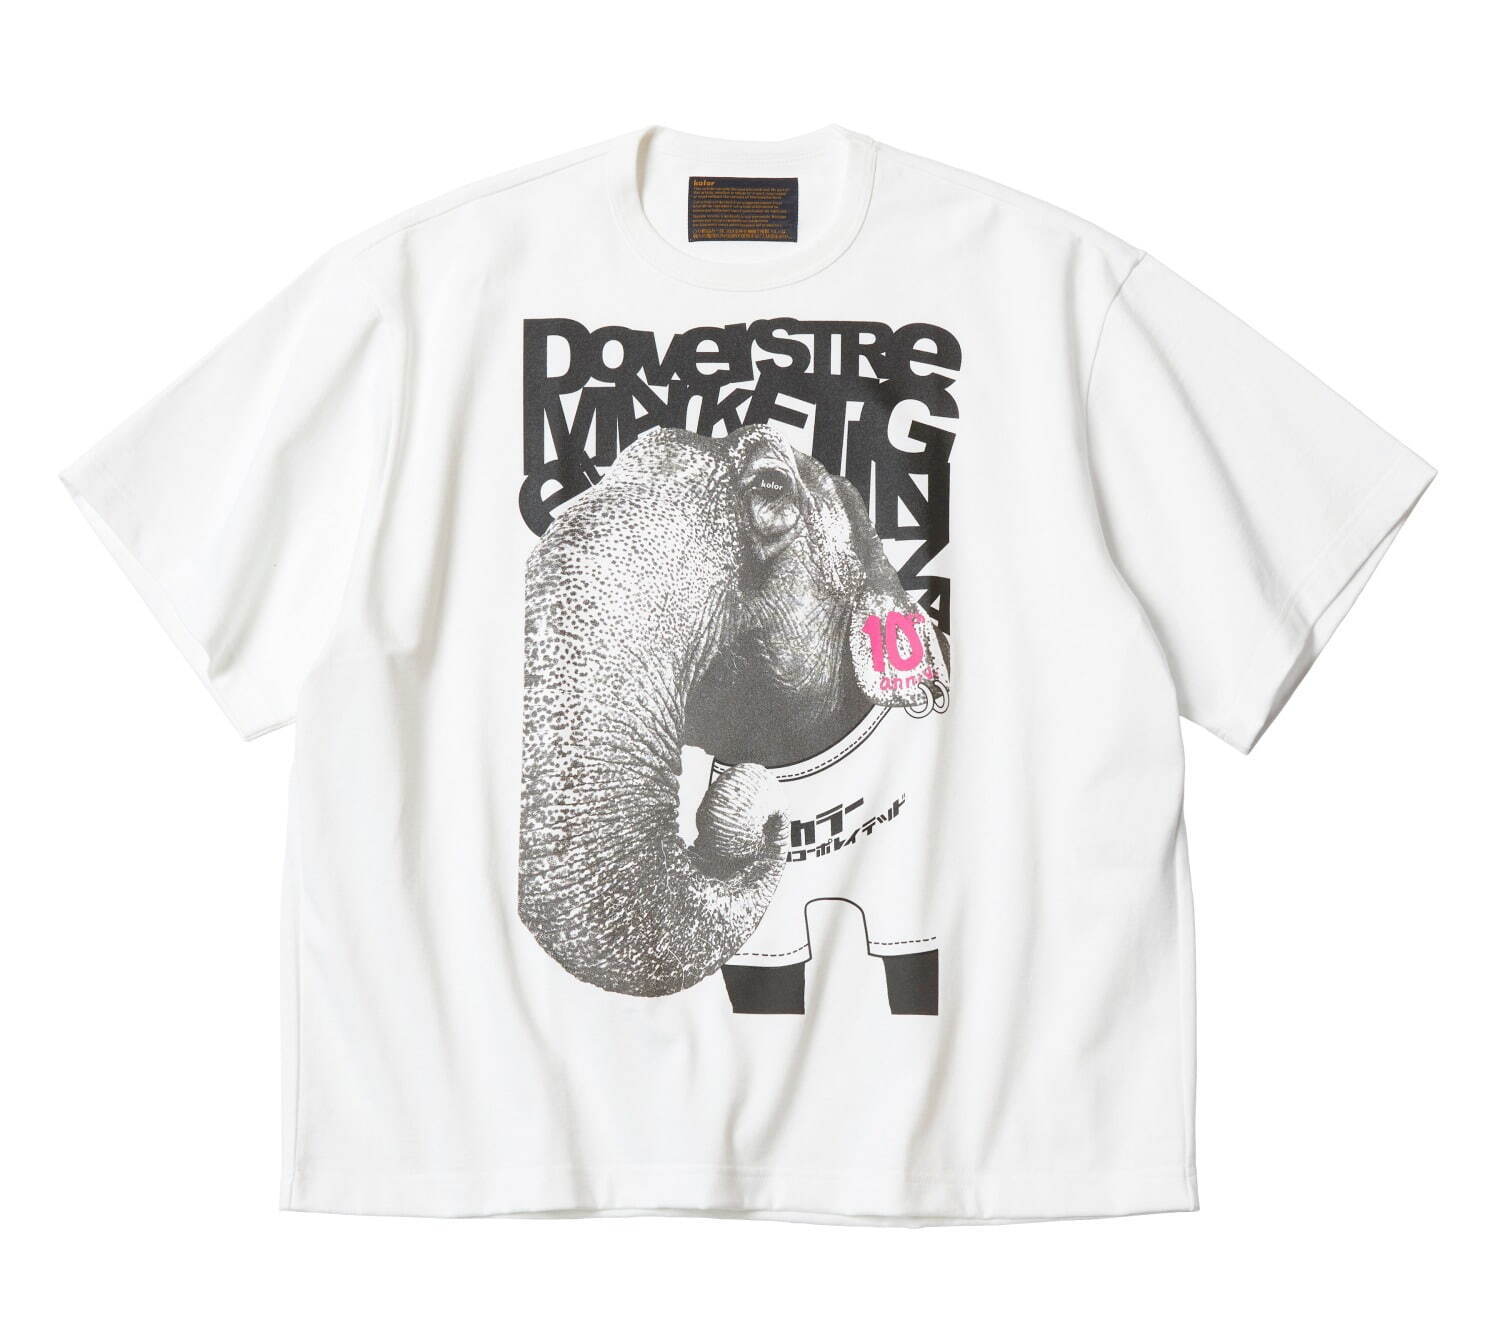 Tシャツ(ホワイト) 18,700円